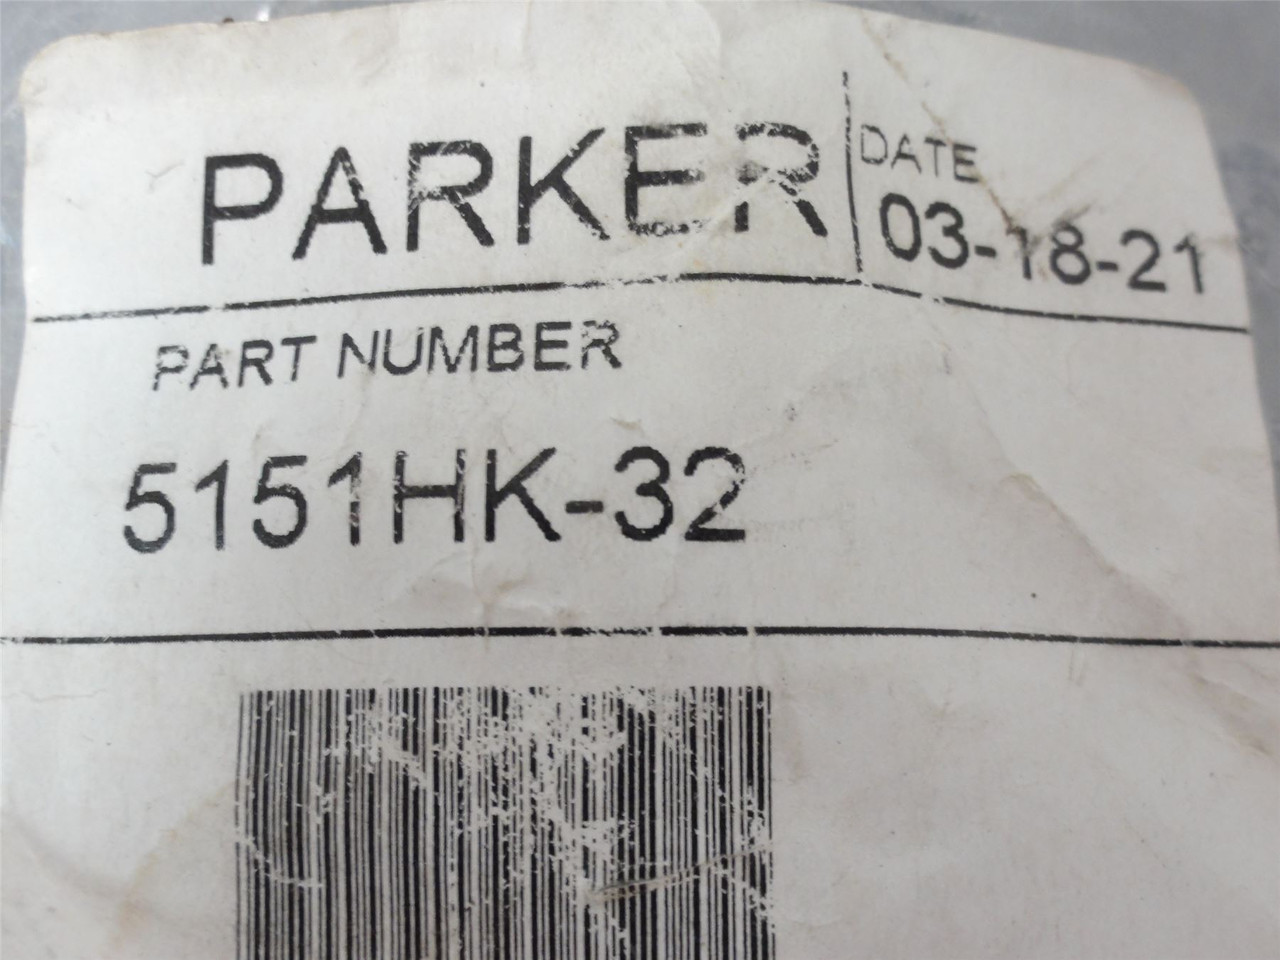 Parker 5151HK-32; Hose Flange Kit; Size 2"